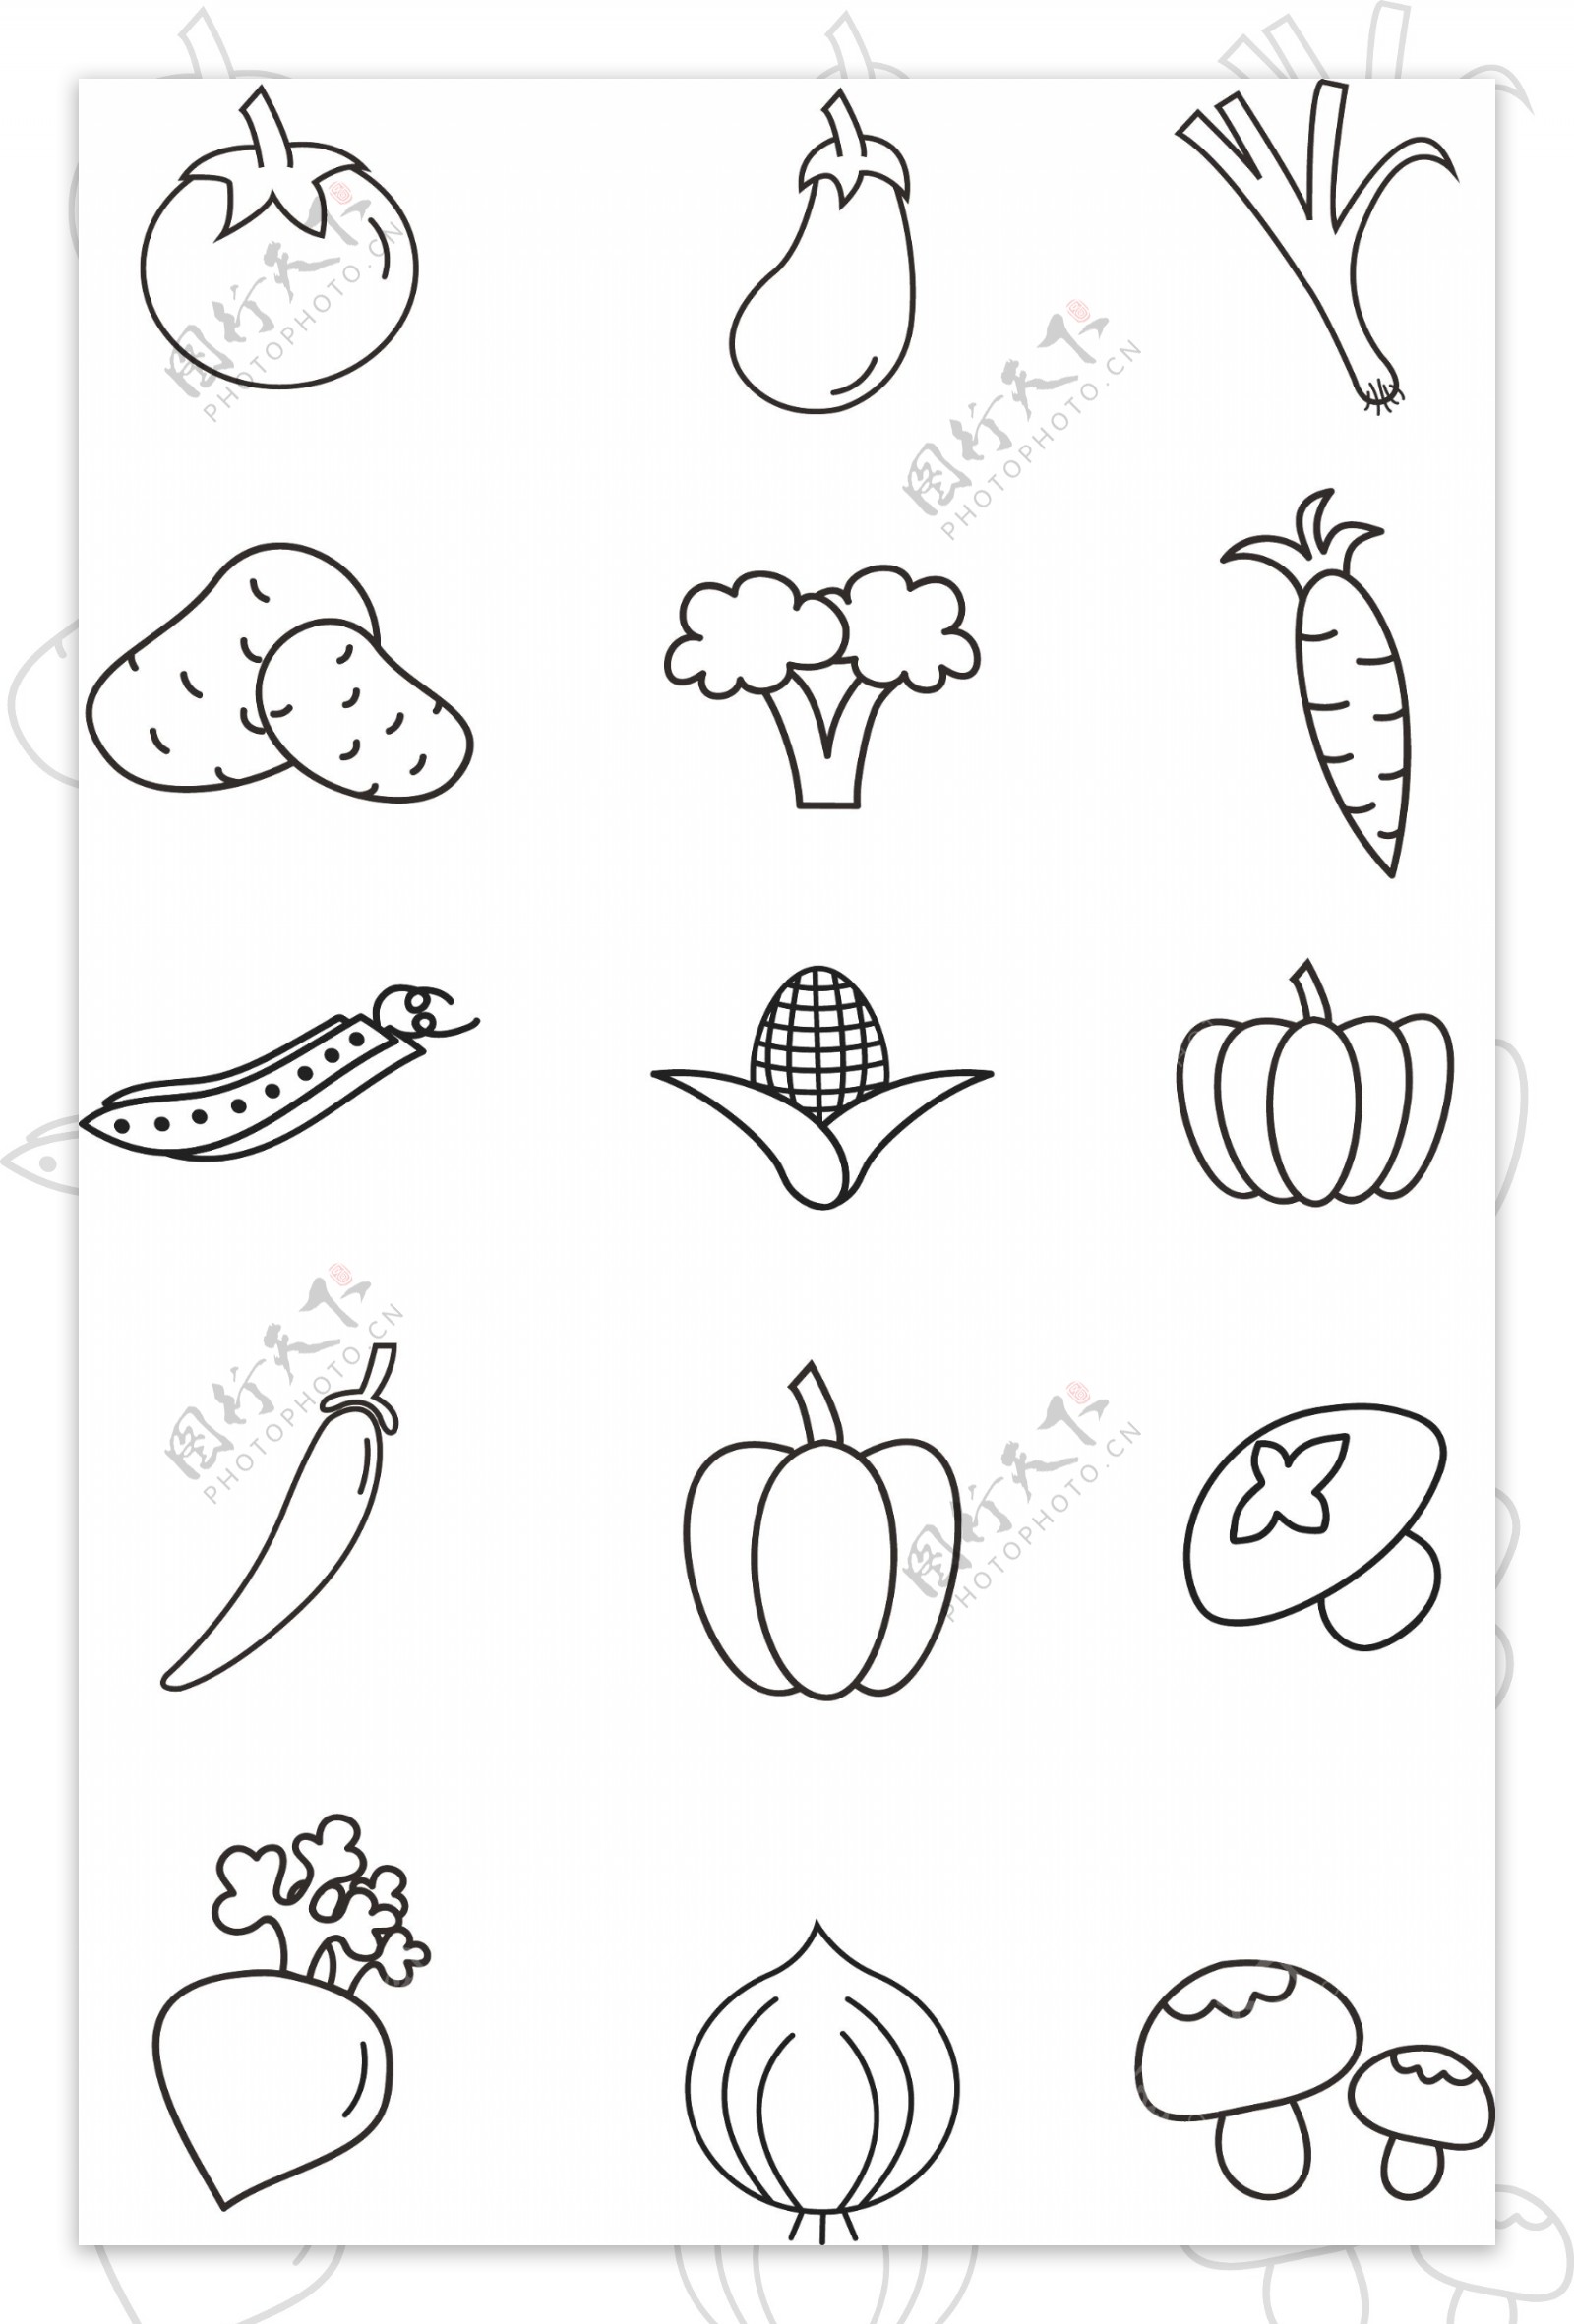 蔬菜简笔画icon黑白可商用元素